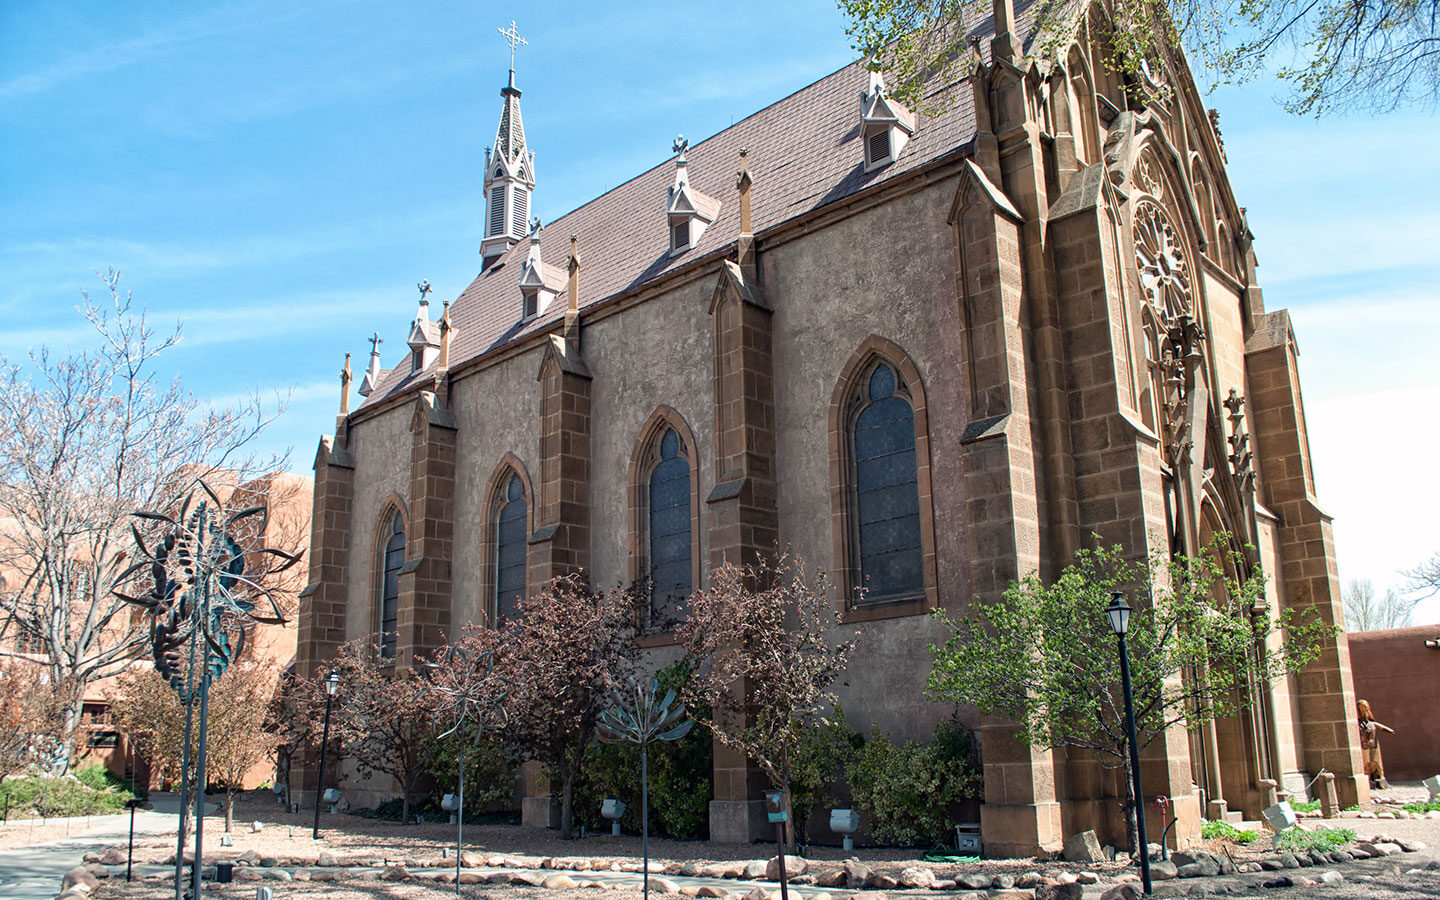 Saint Francis Cathedral in Santa Fe